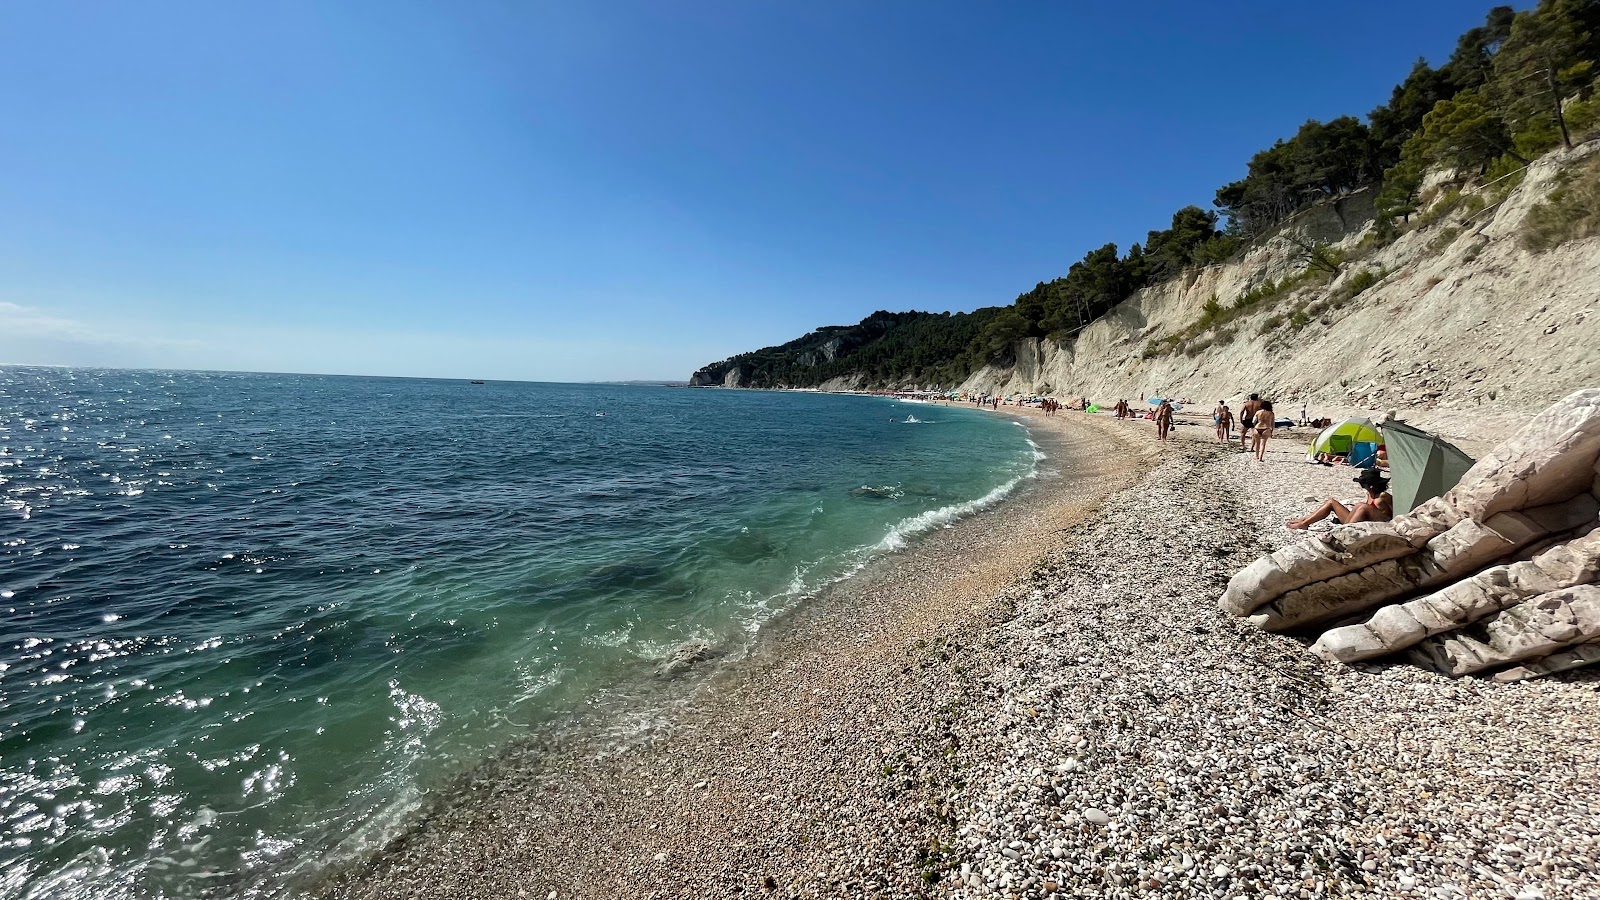 Spiaggia Sassi Neri'in fotoğrafı hafif ince çakıl taş yüzey ile